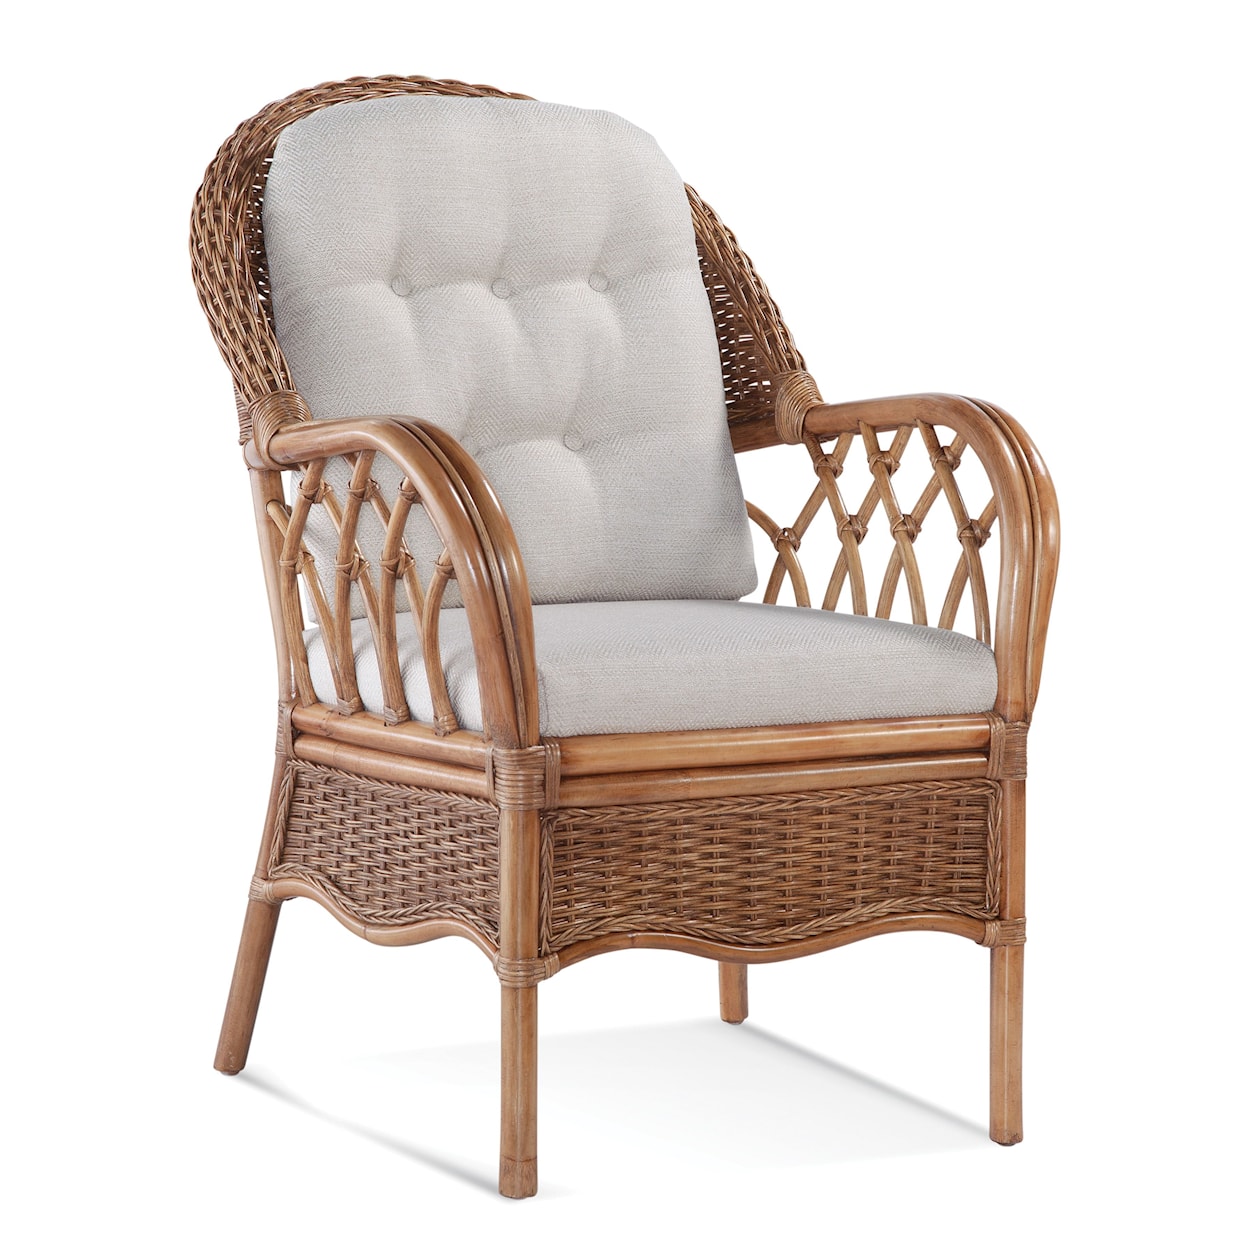 Braxton Culler Everglade Arm Chair